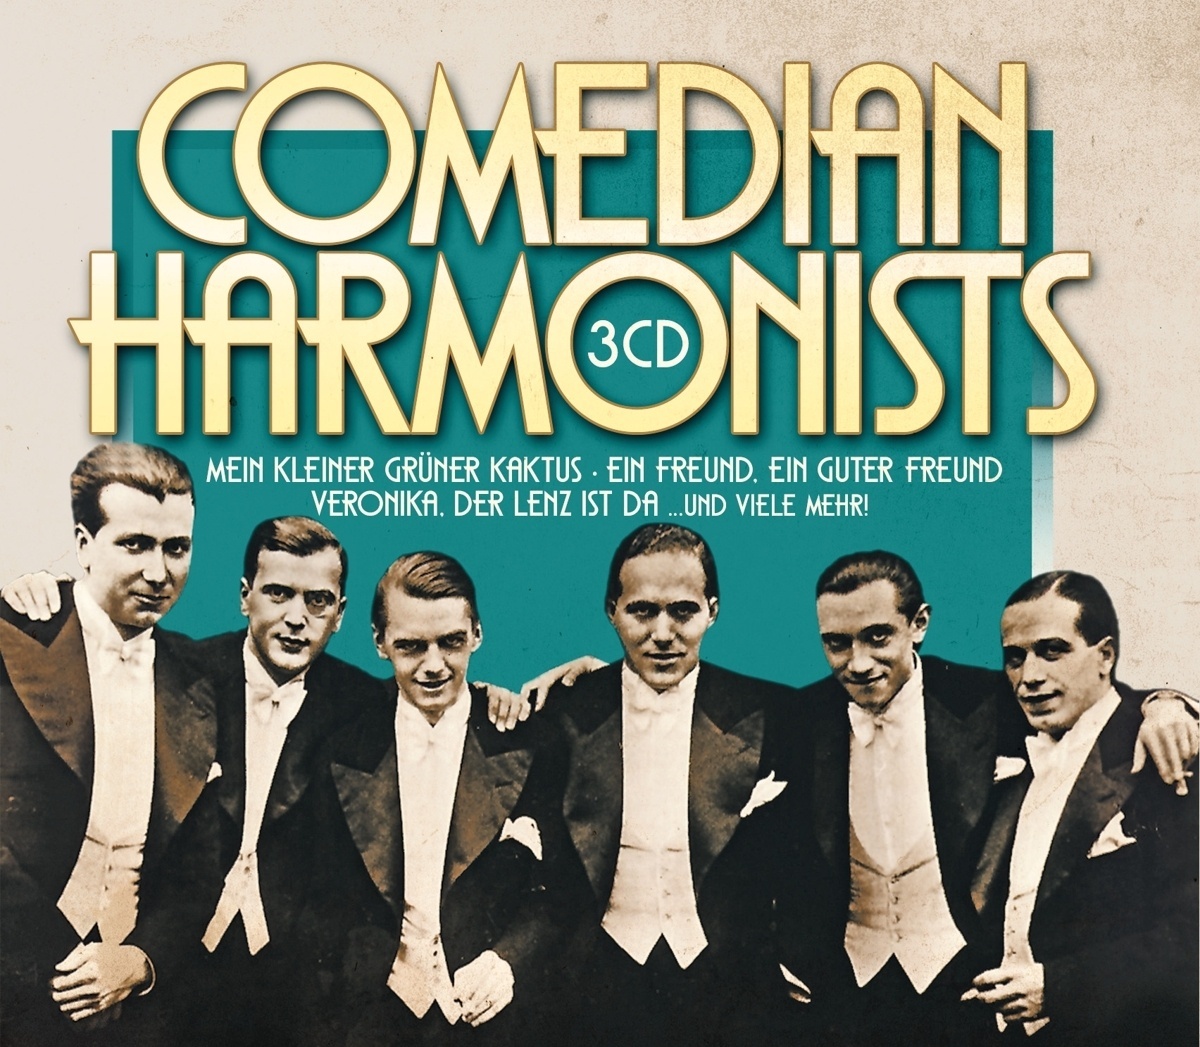 Comedian Harmonists - Comedian Harmonists. (CD)